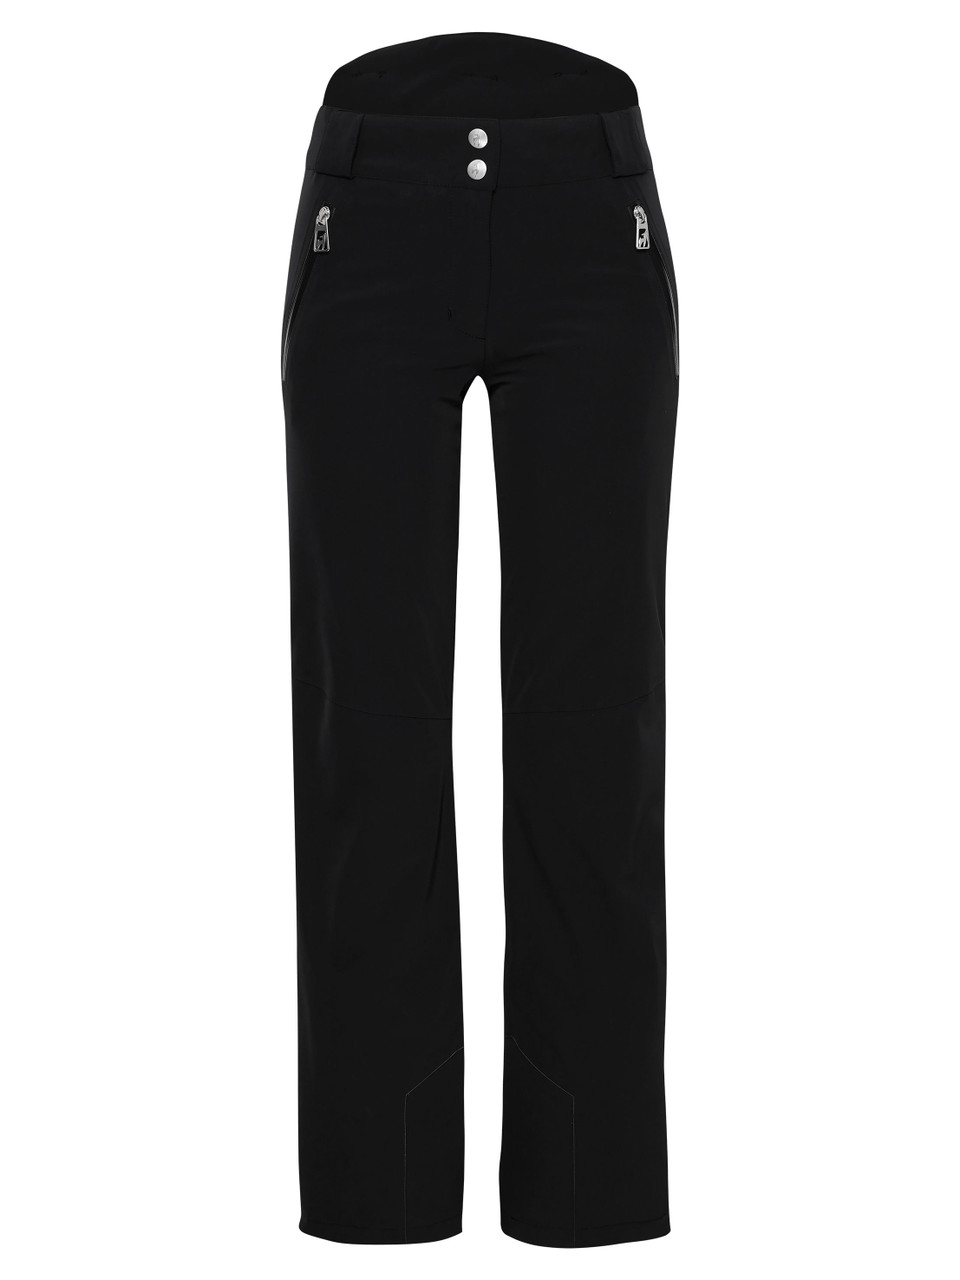 Vuarnet Sportswear Black Pants Trousers Women's Size 6